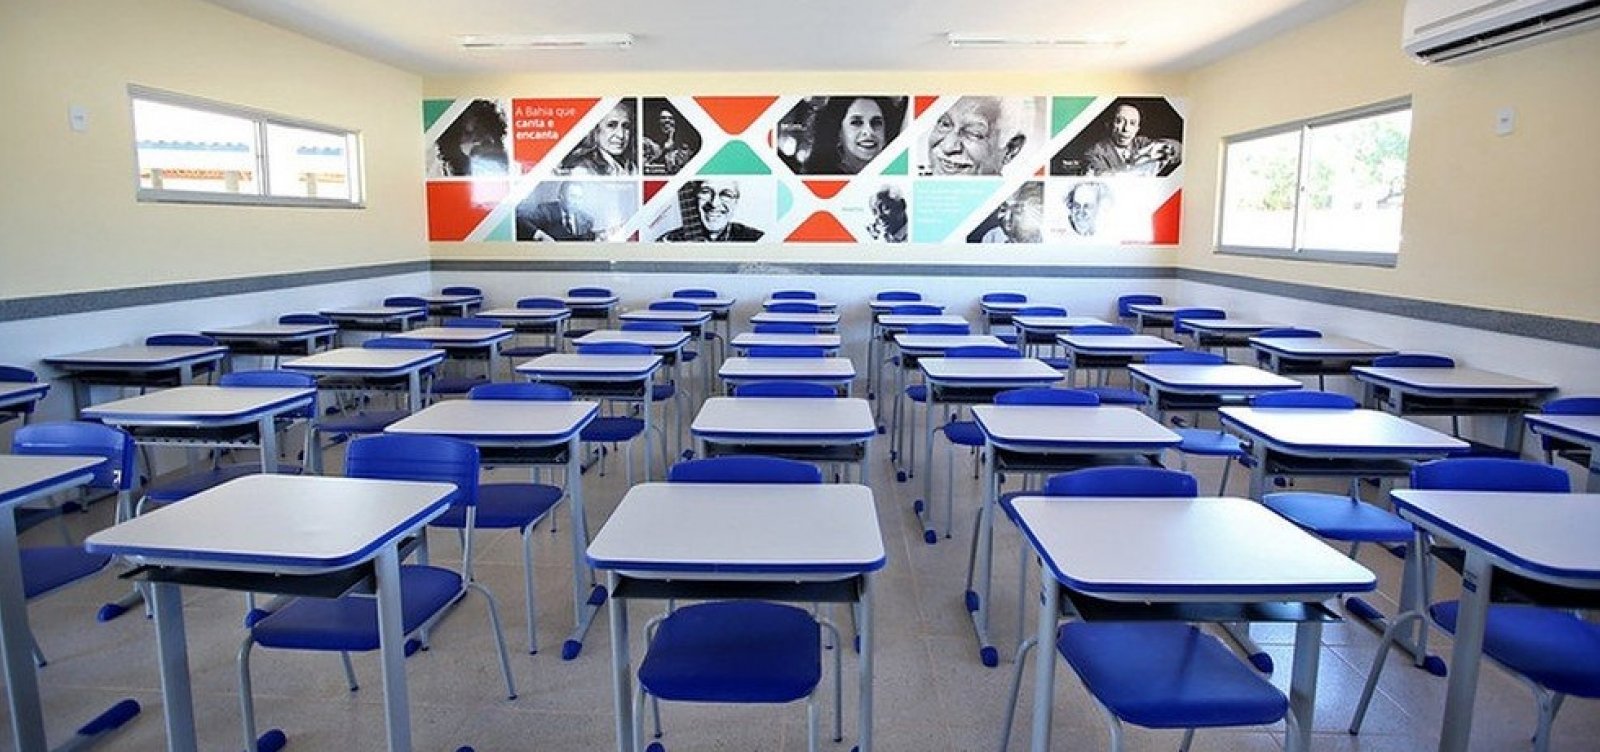 Sindicato das escolas particulares defende retorno gradativo das aulas -  Política ao Vivo